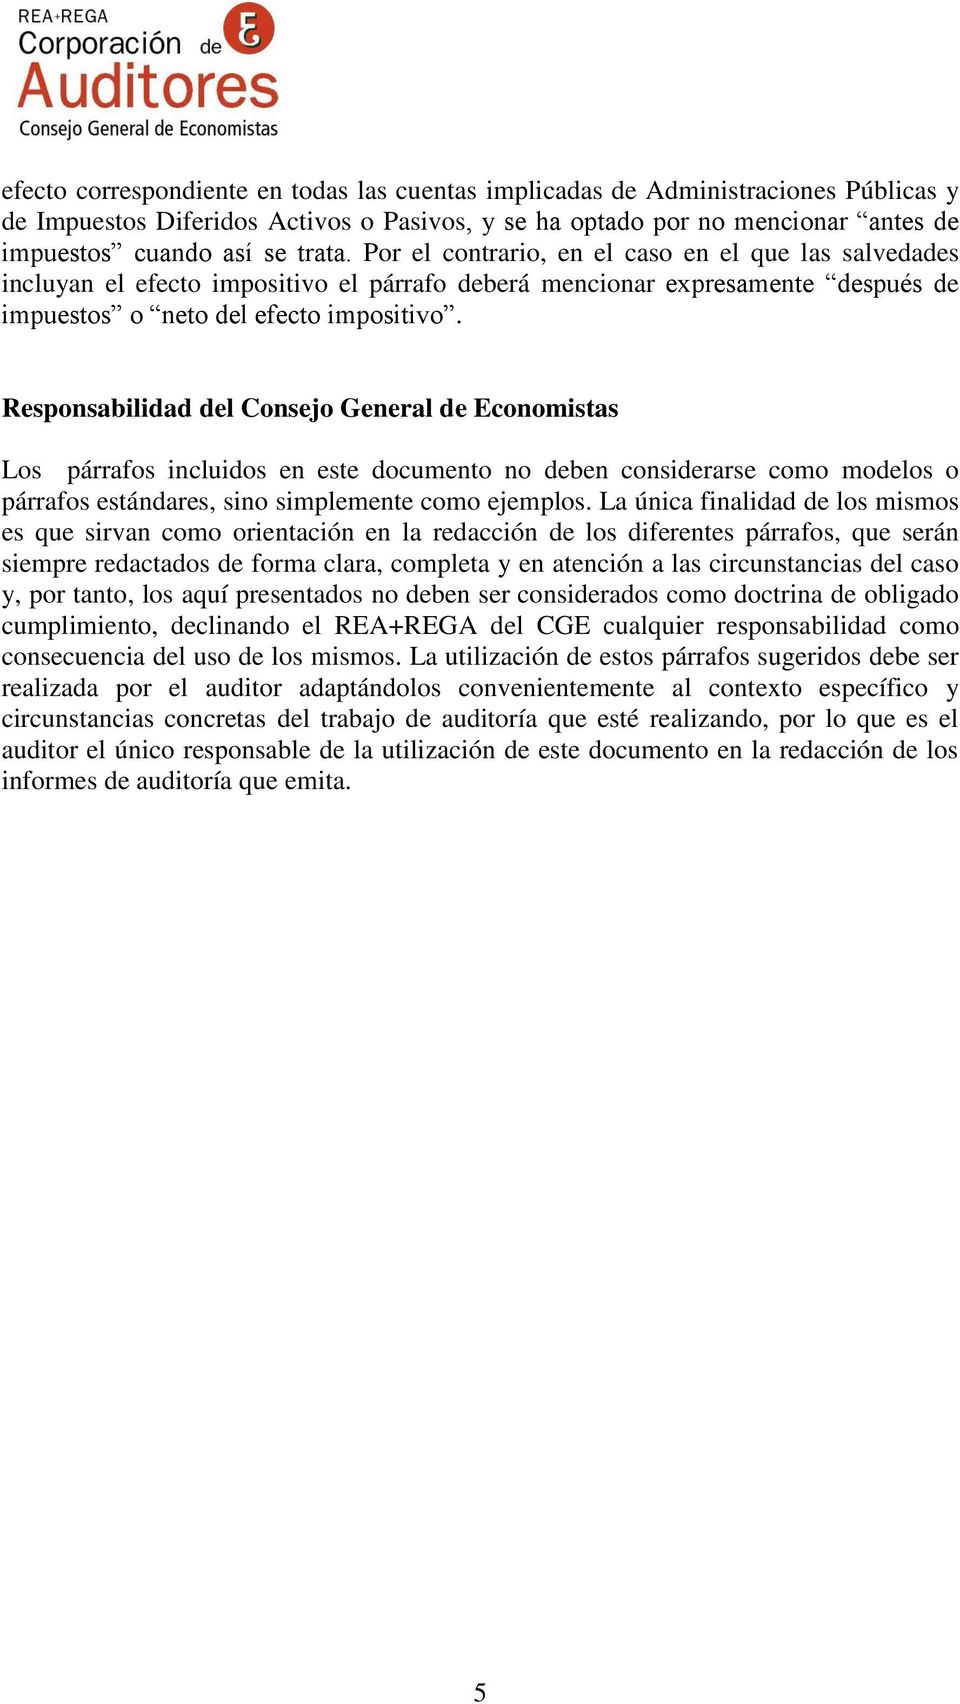 Responsabilidad del Consejo General de Economistas Los párrafos incluidos en este documento no deben considerarse como modelos o párrafos estándares, sino simplemente como ejemplos.